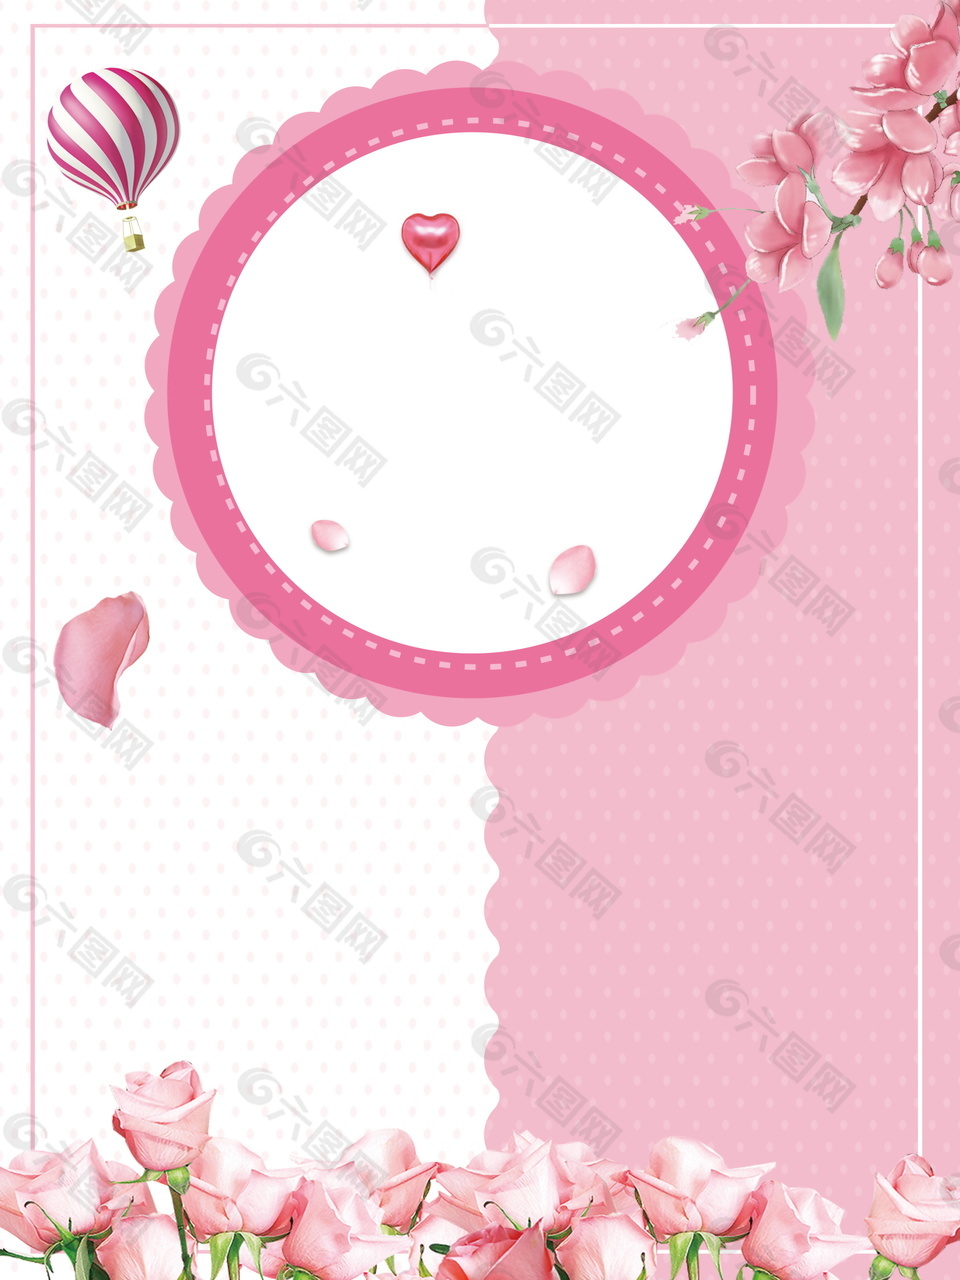 唯美粉玫瑰花瓣圆形婚礼签到背景设计